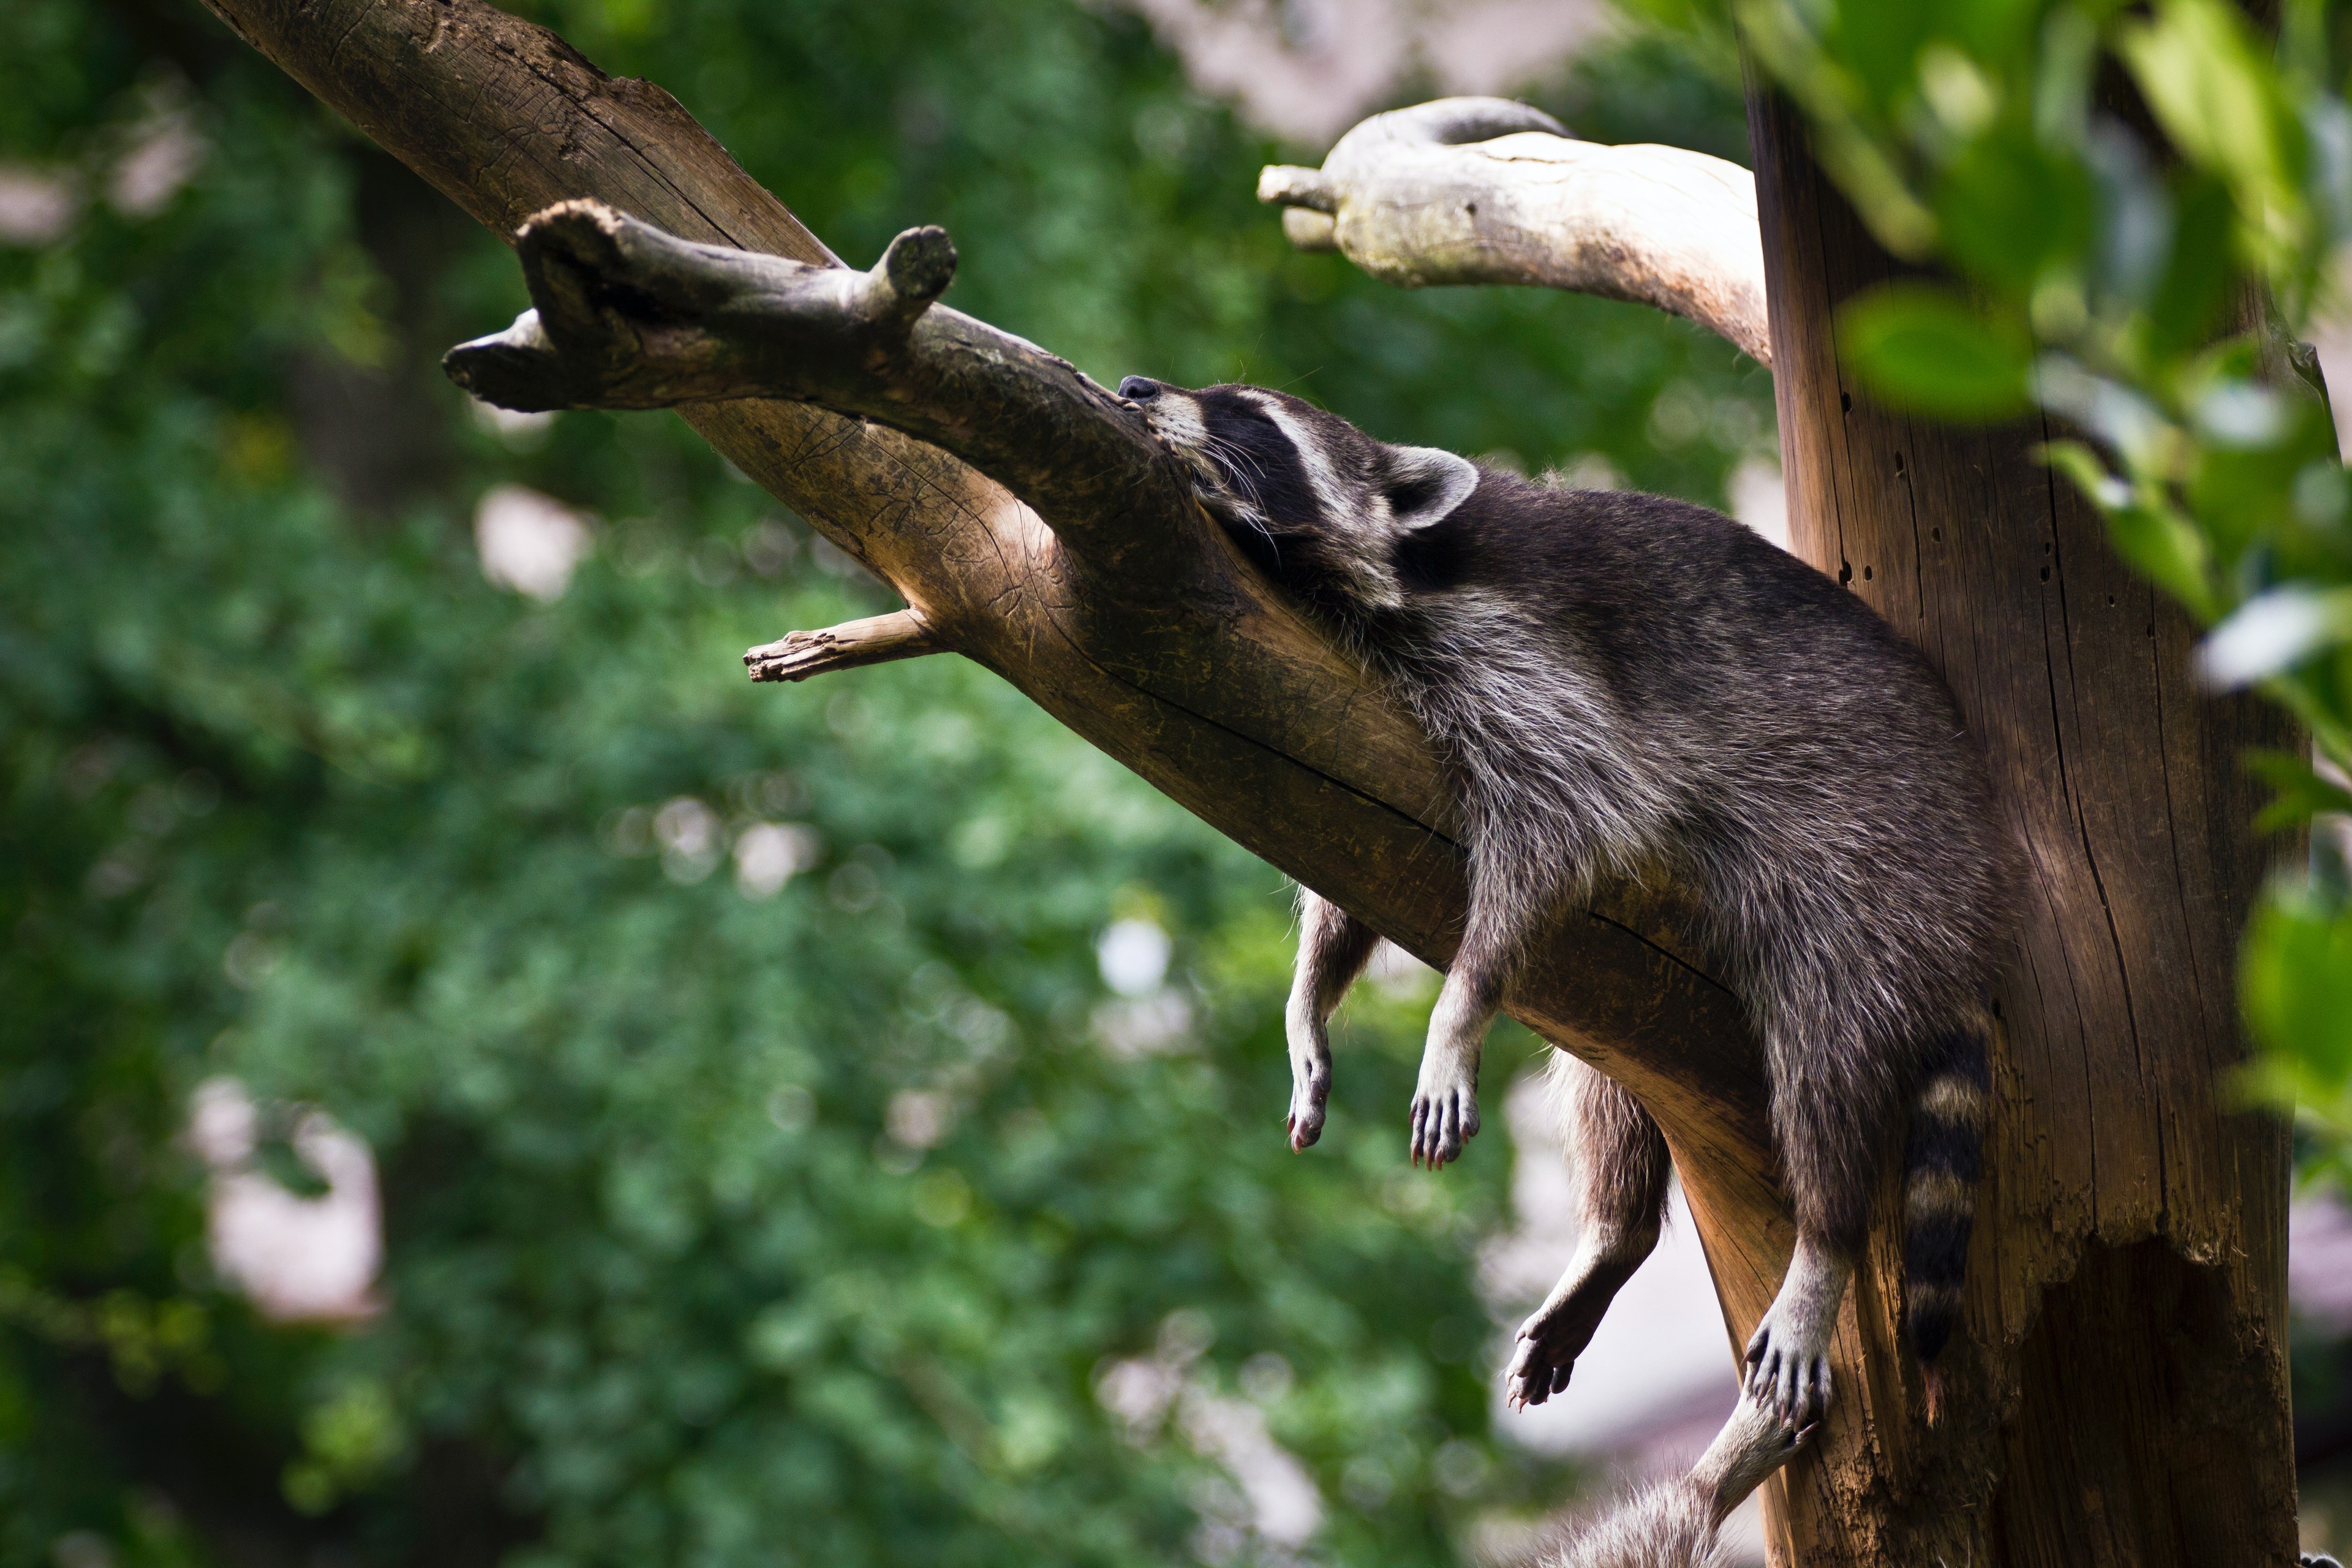 Racoon sleeping on a tree